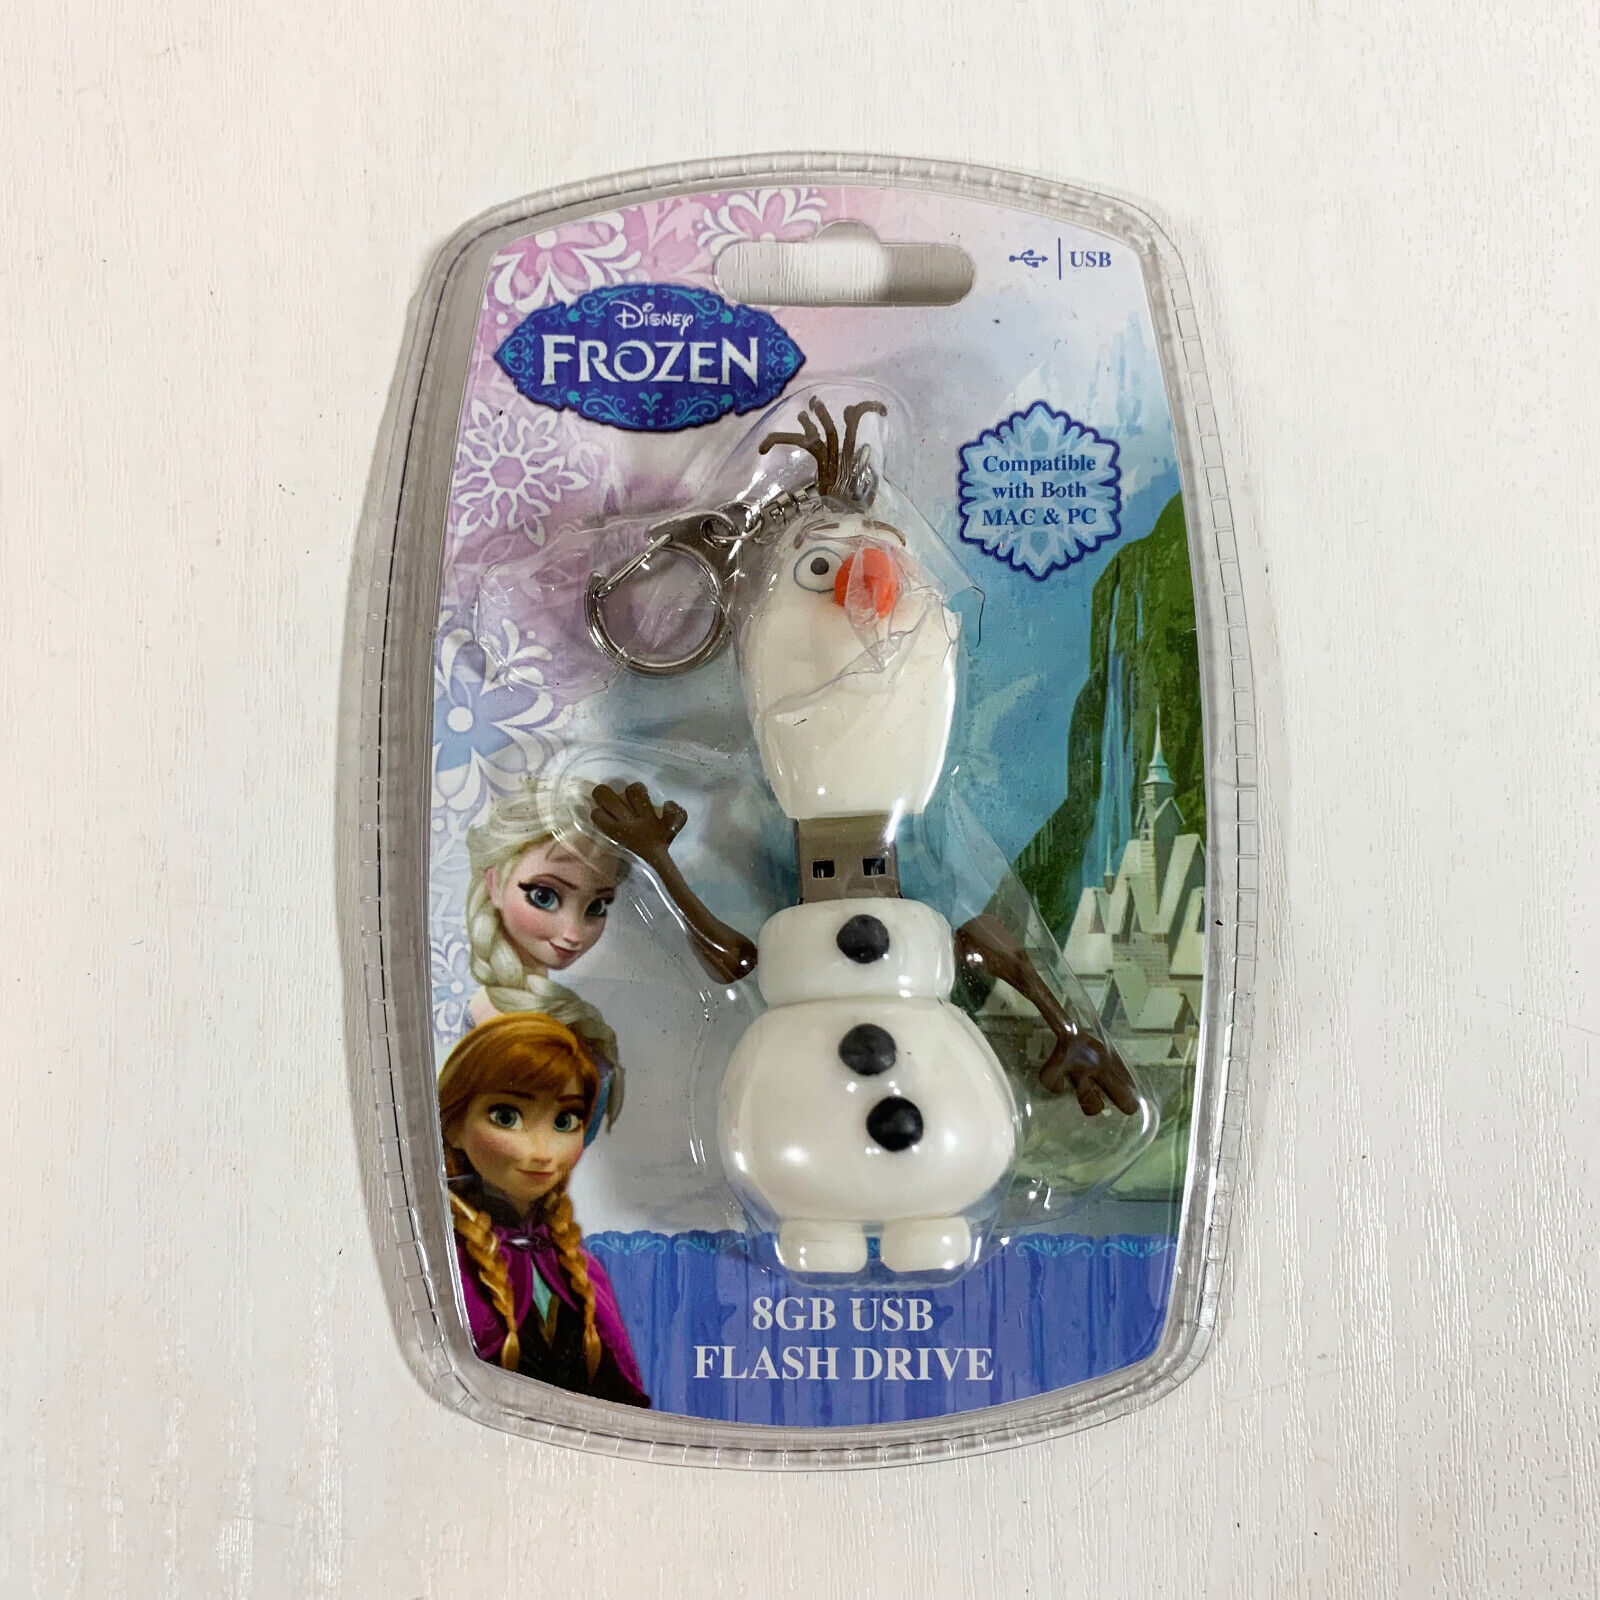 [NEW] Disney Frozen OLAF 8GB USB Memory Stick Flash Drive Keychain